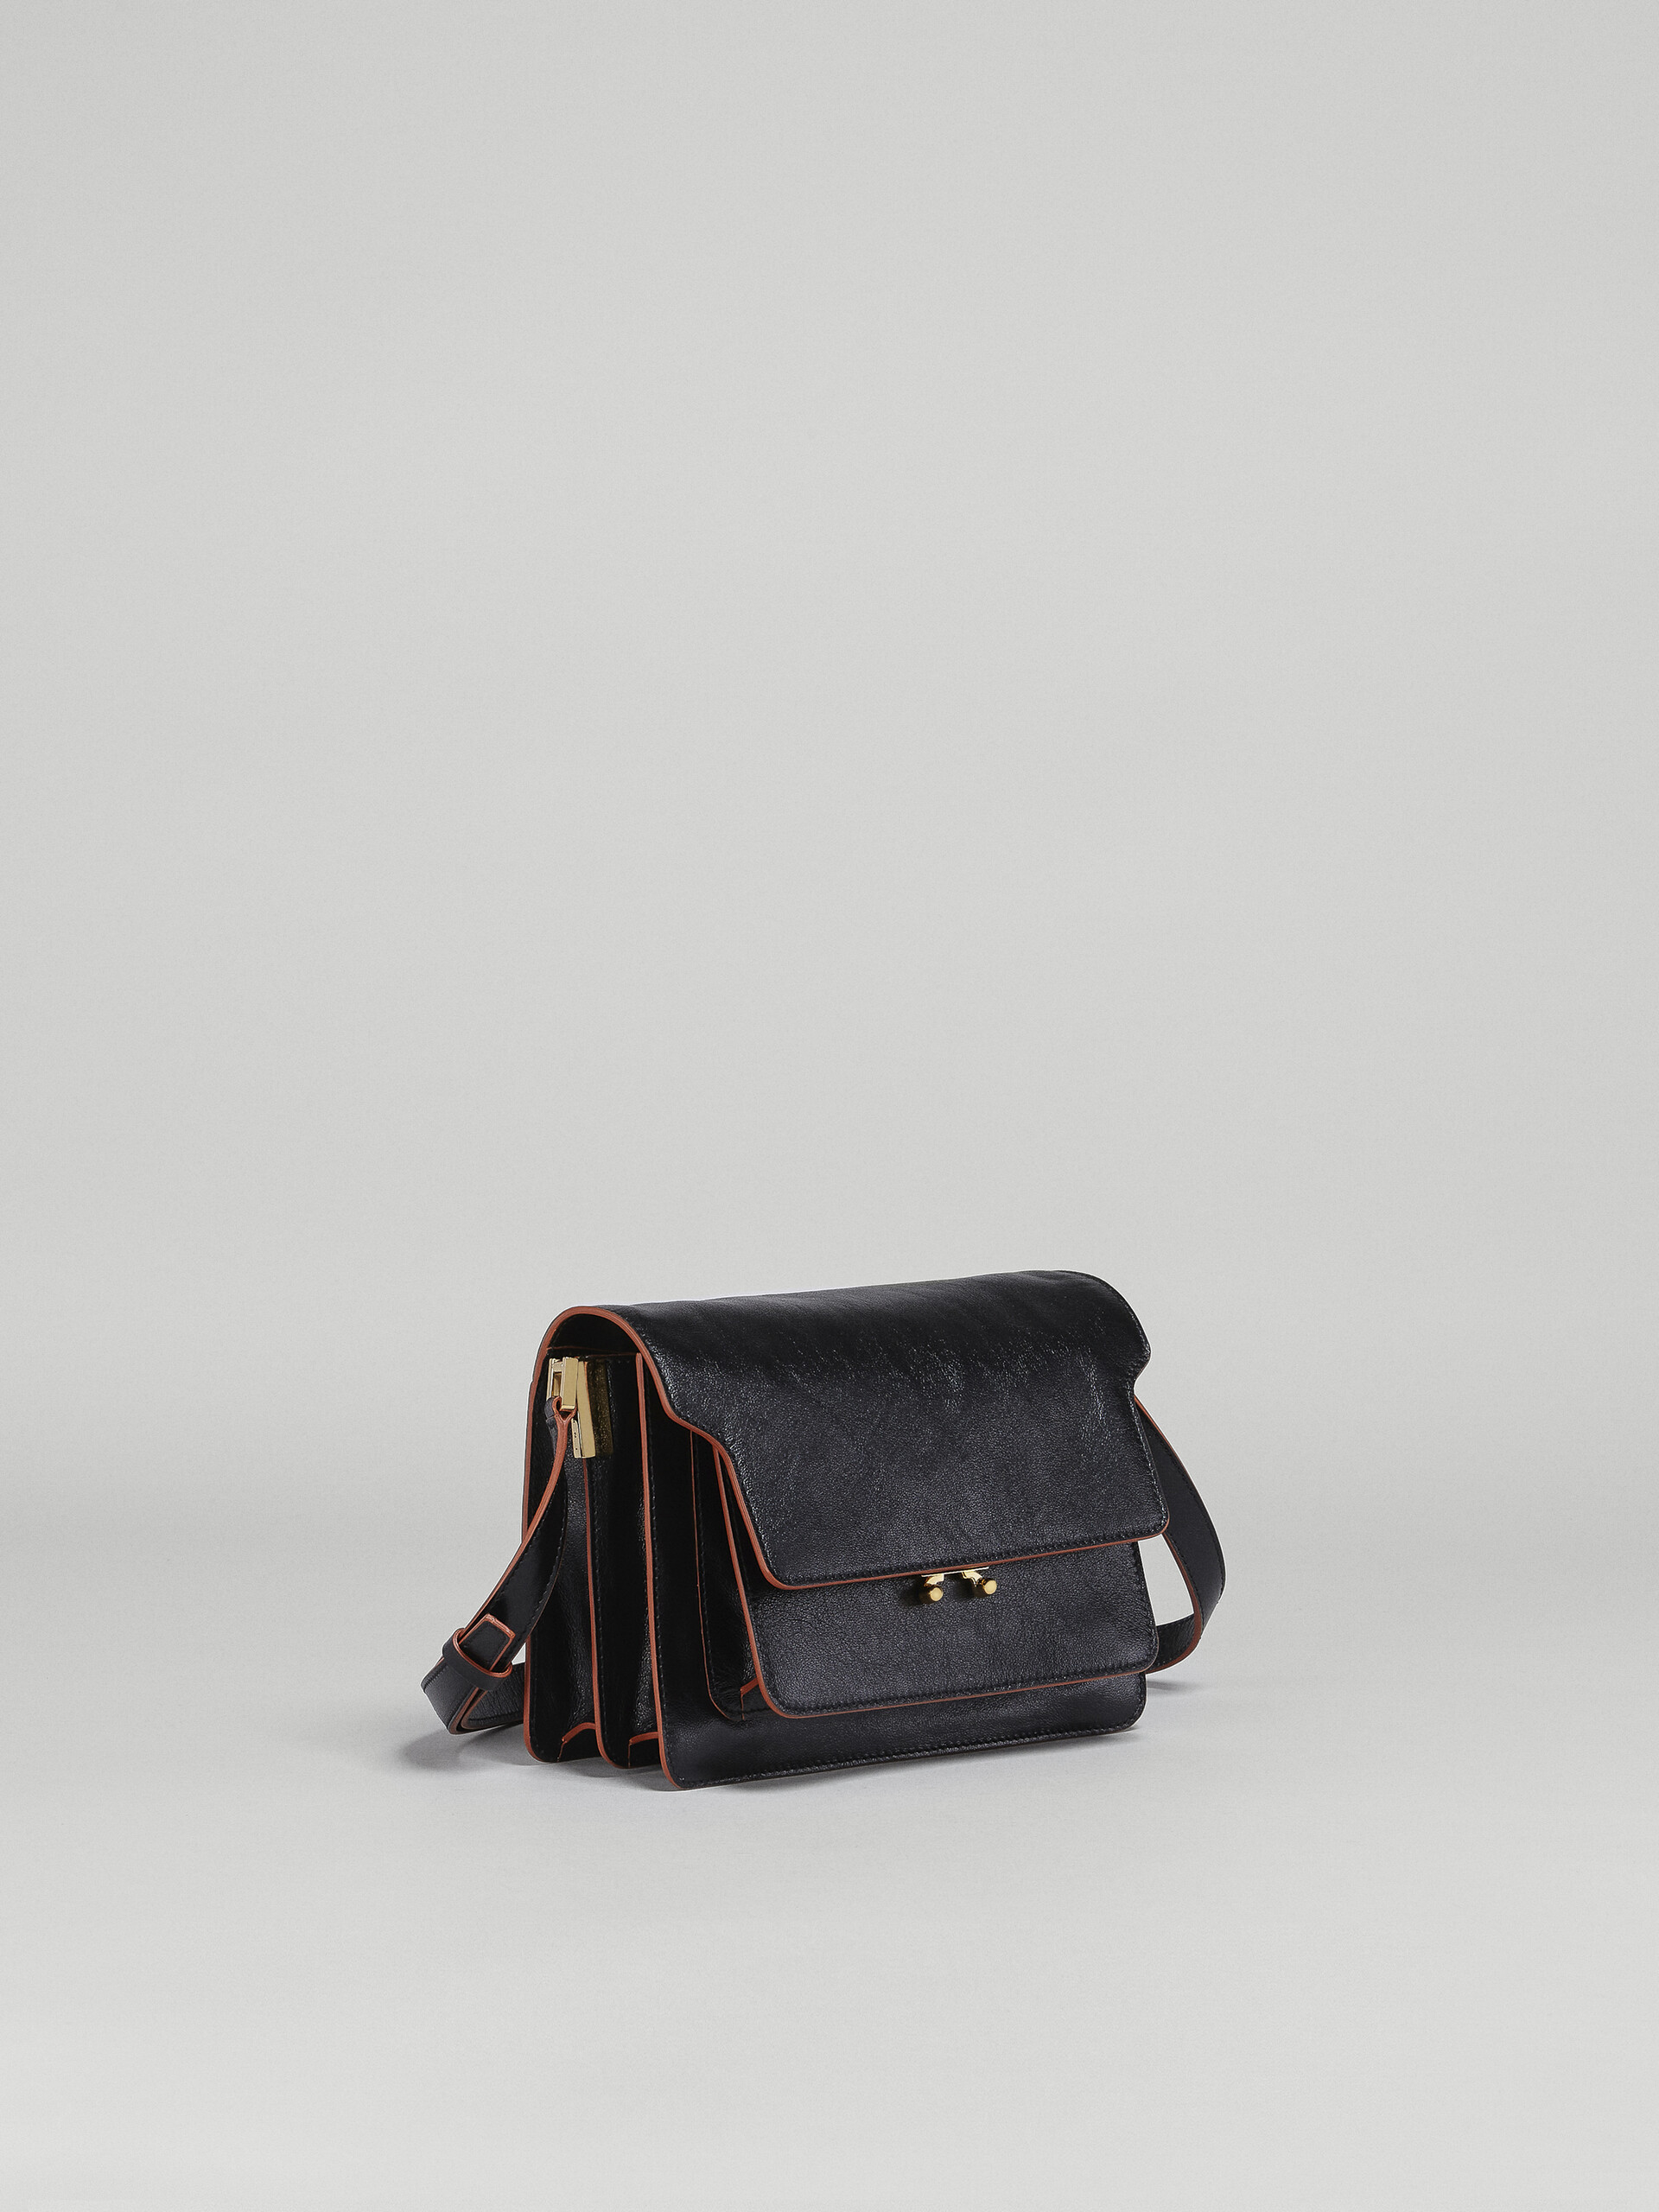 TRUNK SOFT medium bag in black leather - Shoulder Bag - Image 6